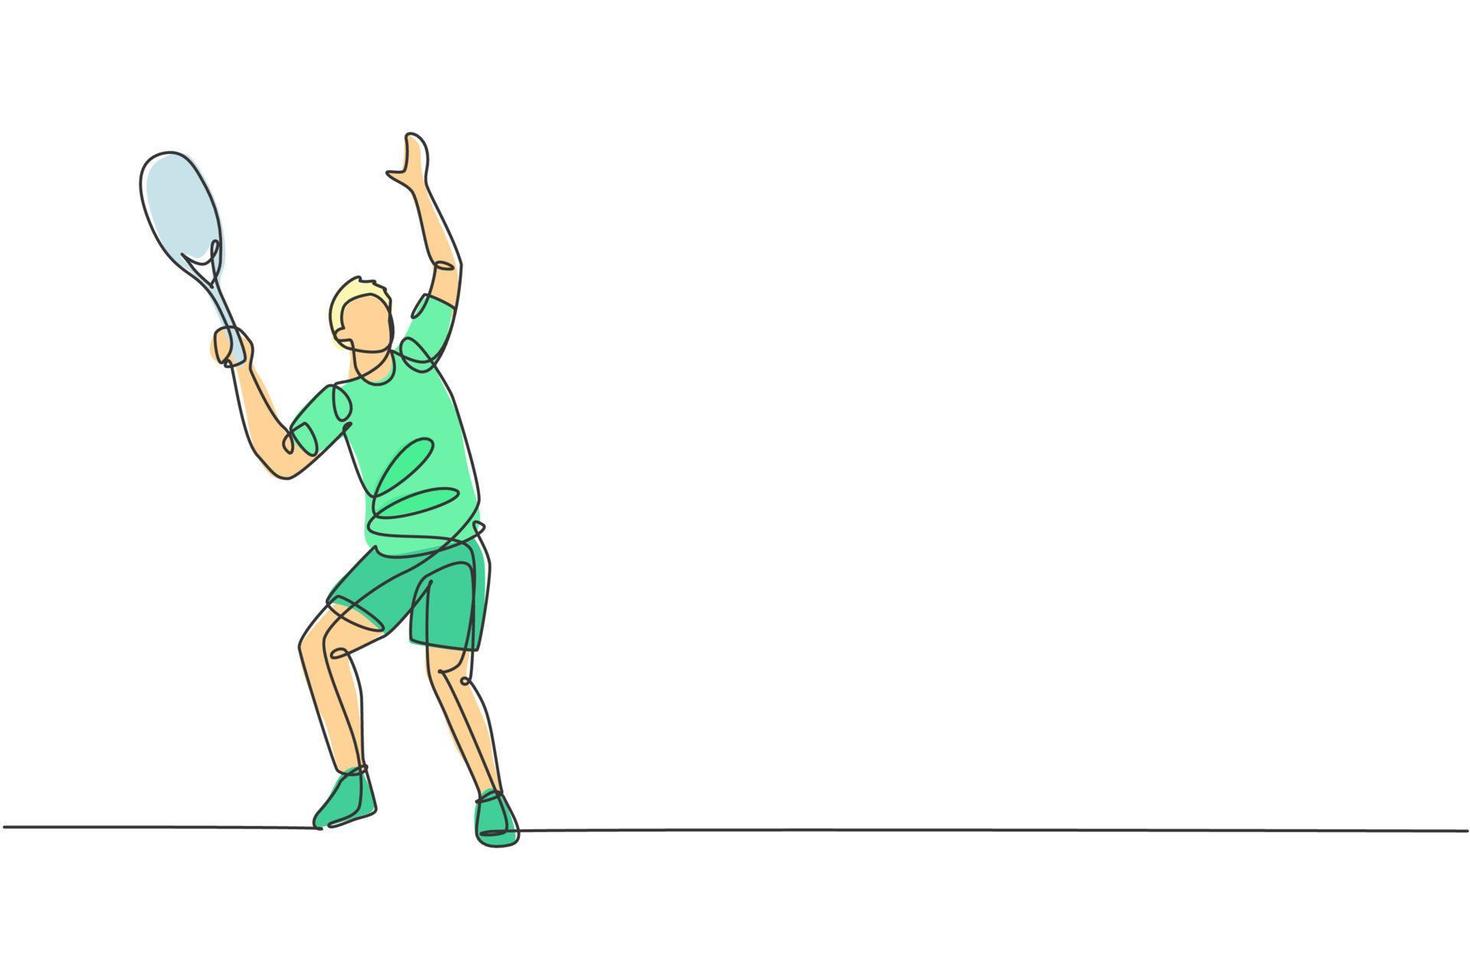 un dessin en ligne continu d'un jeune joueur de tennis heureux se prépare à servir et à frapper la balle. concept de sport de compétition. illustration vectorielle dynamique de conception de dessin à une seule ligne pour l'affiche du tournoi vecteur